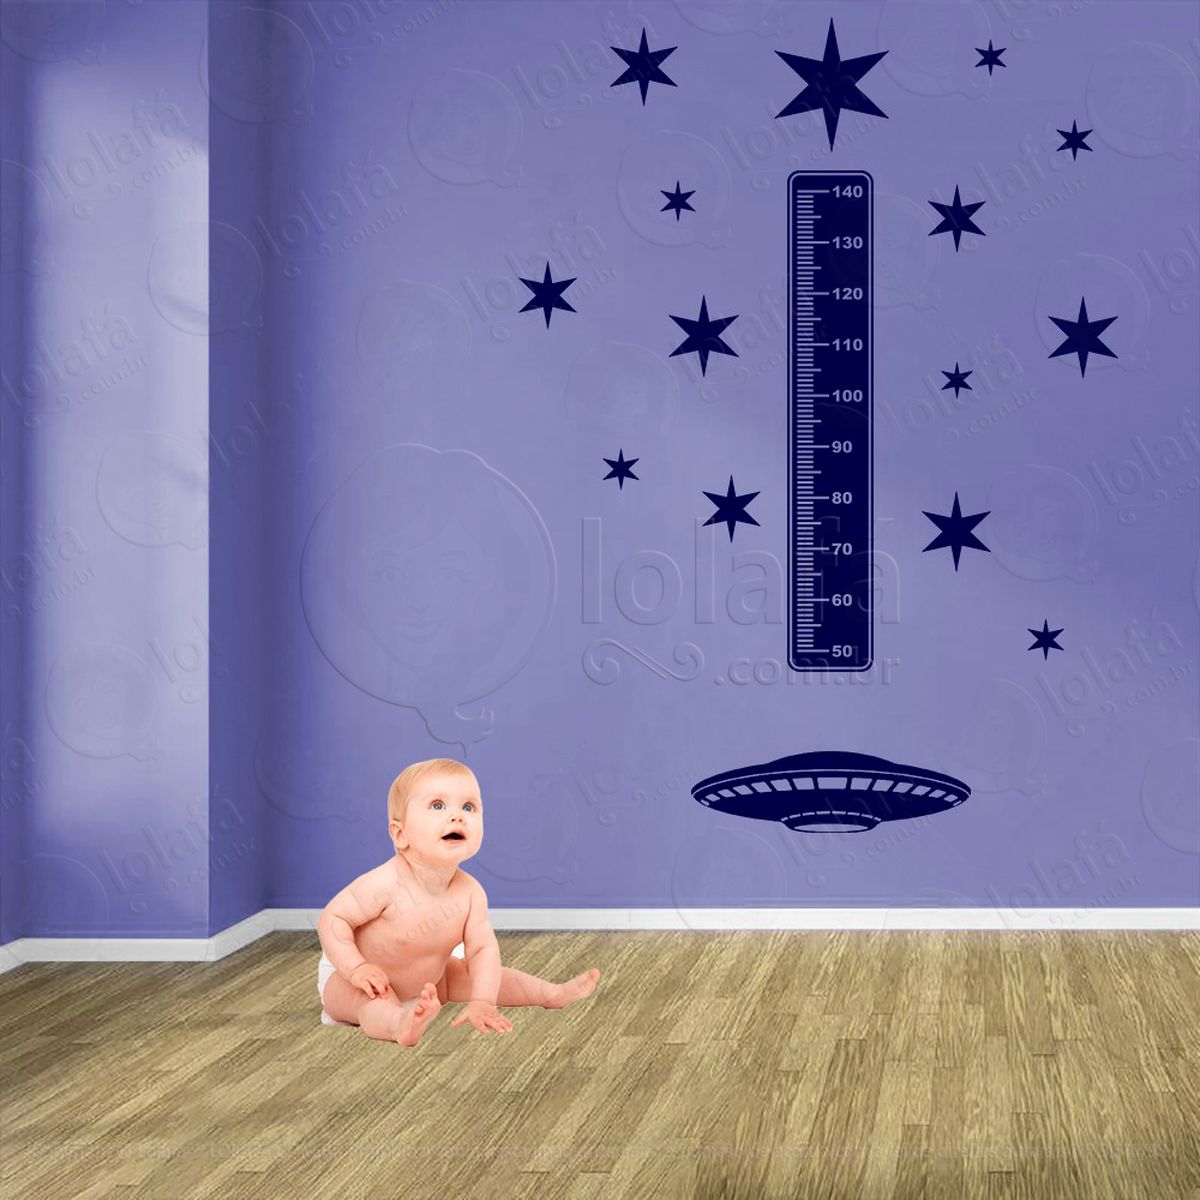 nave espacial e estrelas adesivo régua de crescimento infantil, medidor de altura para quarto, porta e parede - mod:1271